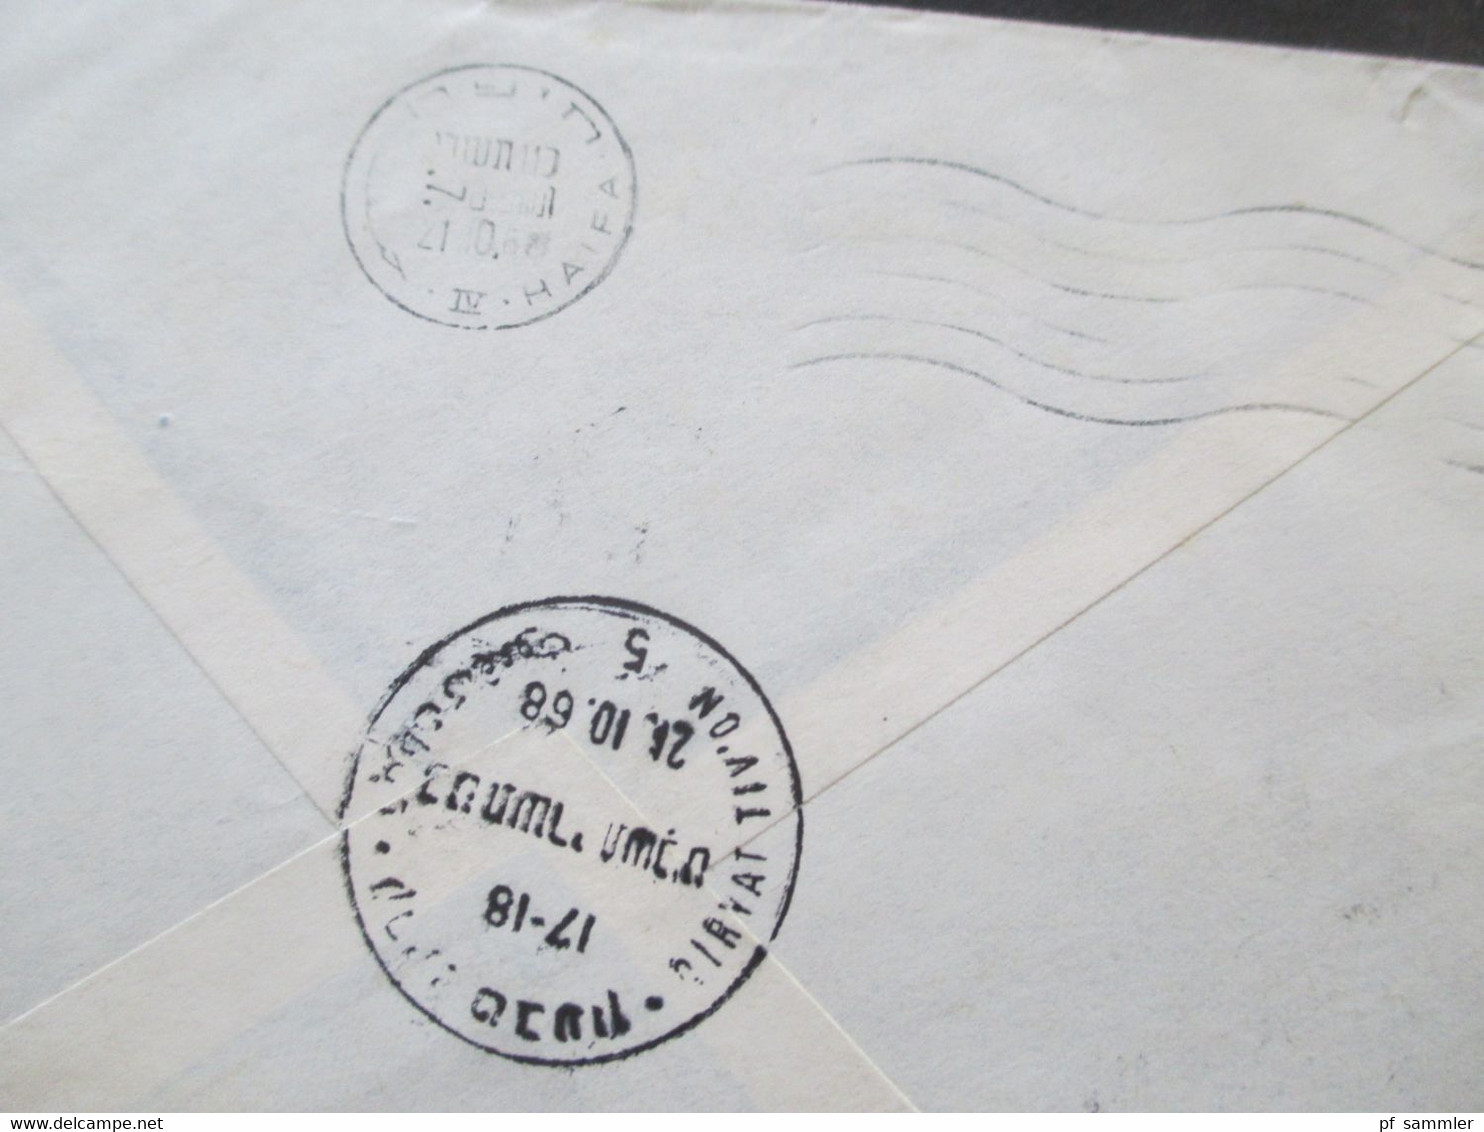 Israel 1968 Air Mail Luftpostbrief Einschreiben Qiryat Tiv'on - München Marke Vom Unterrand! Rückseitig 2 Stempel. - Covers & Documents